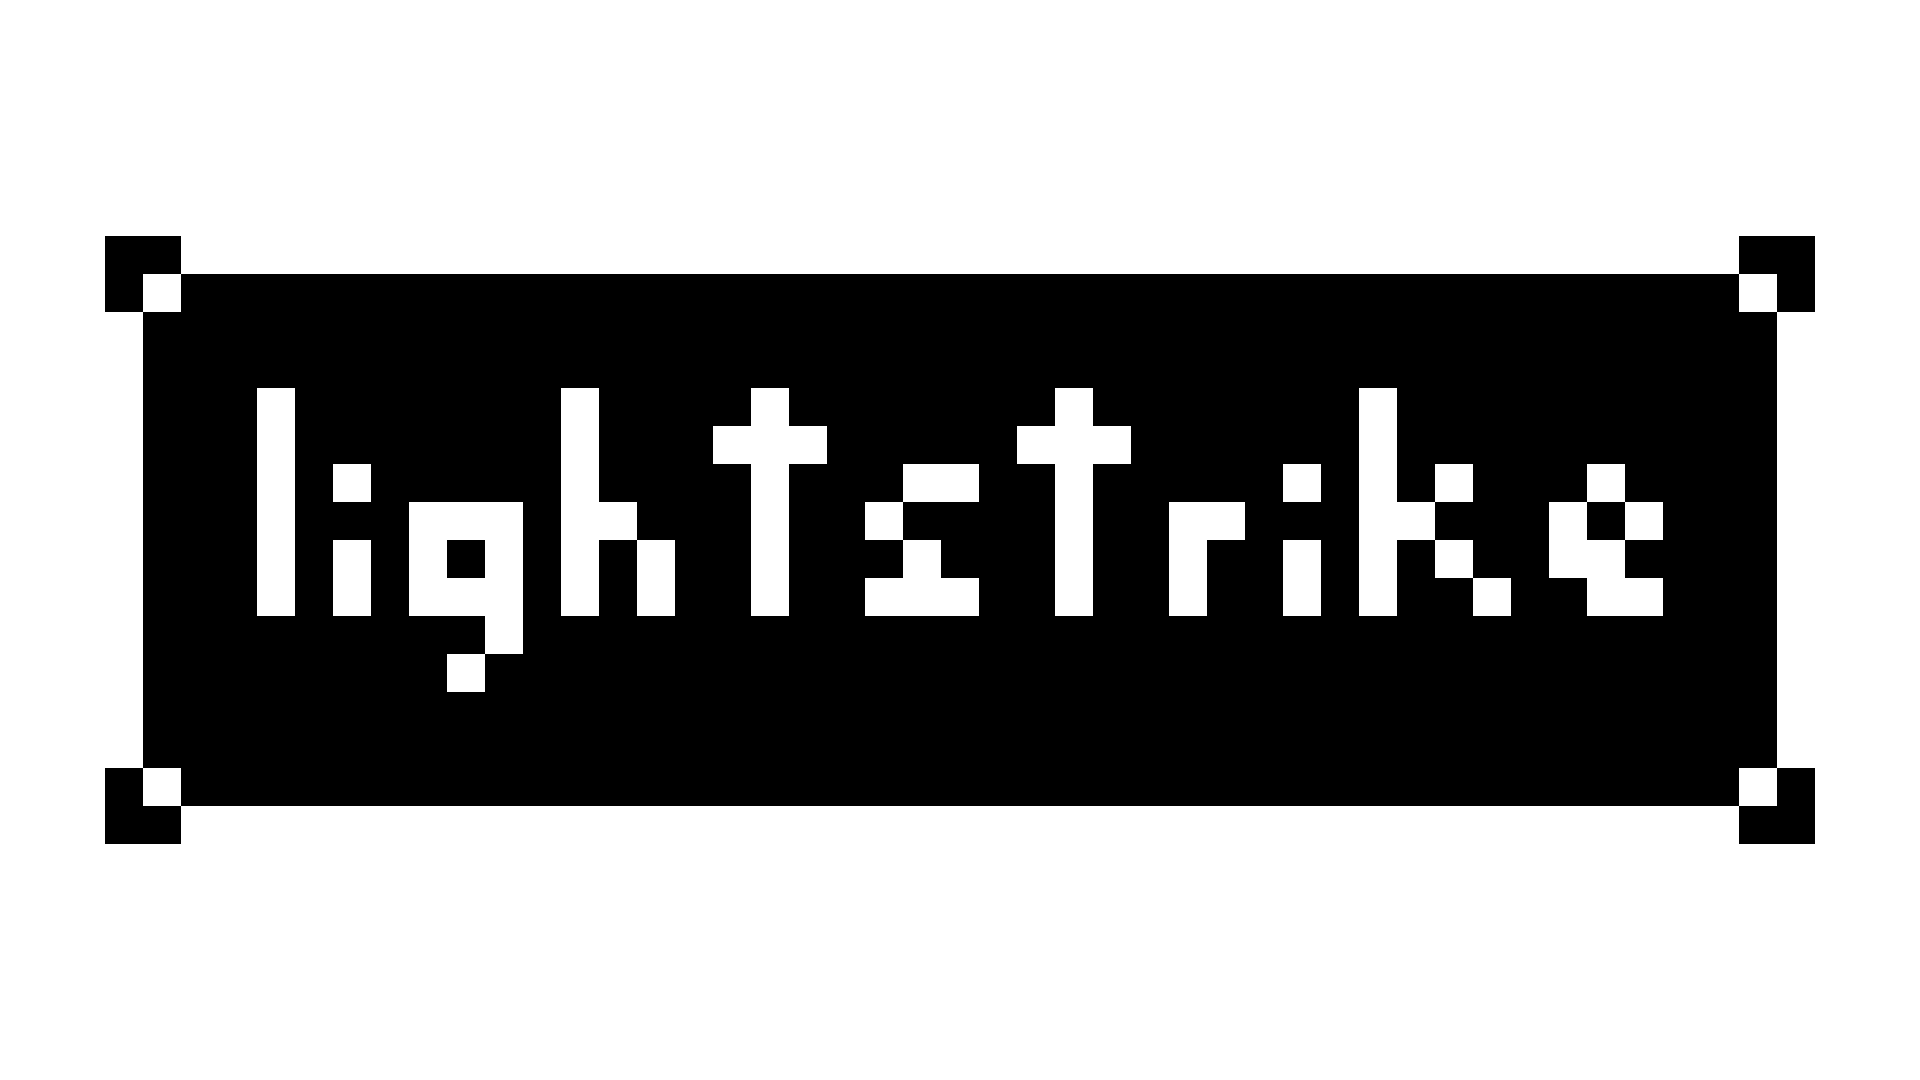 lightstrike